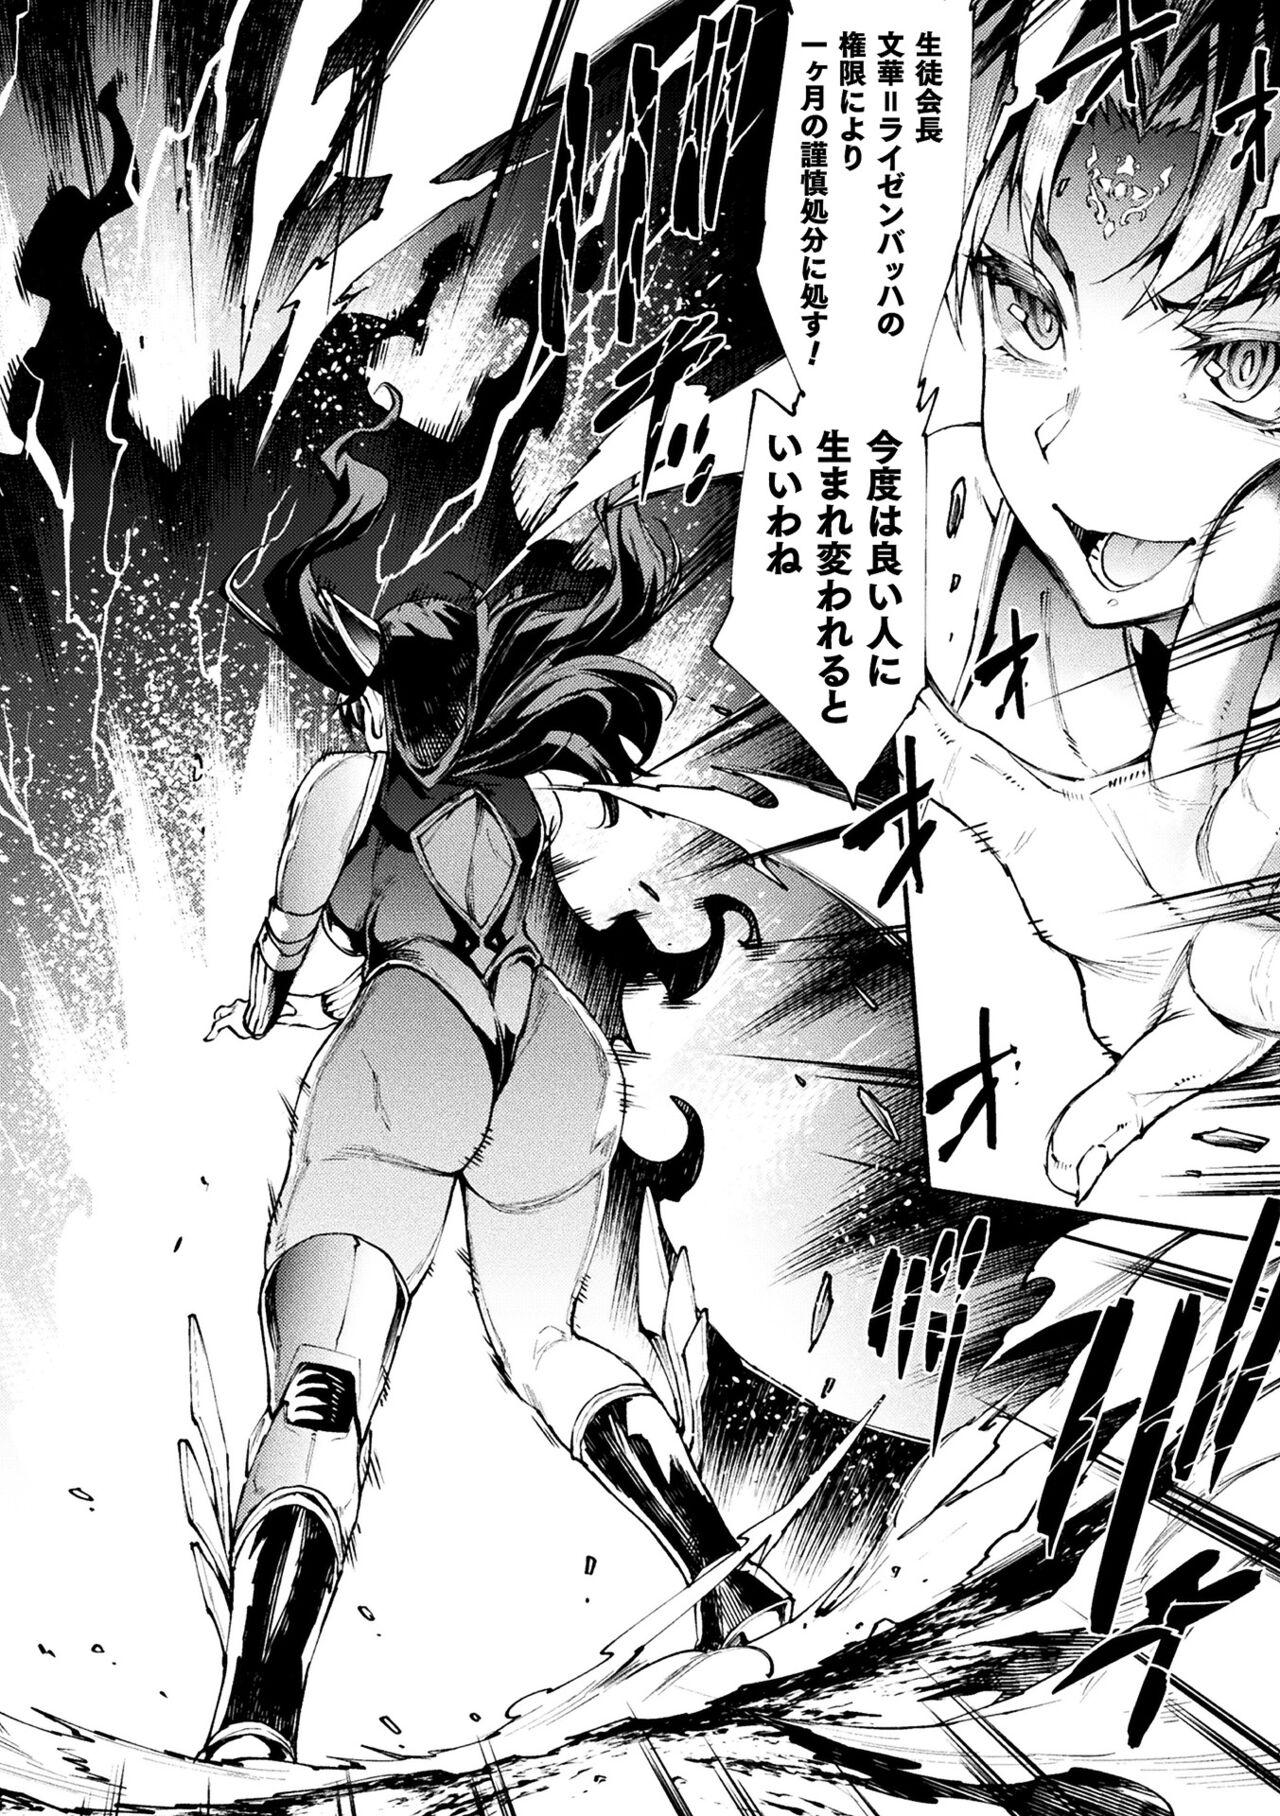 [Erect Sawaru] Raikou Shinki Igis Magia III -PANDRA saga 3rd ignition- 4 [Digital] 229